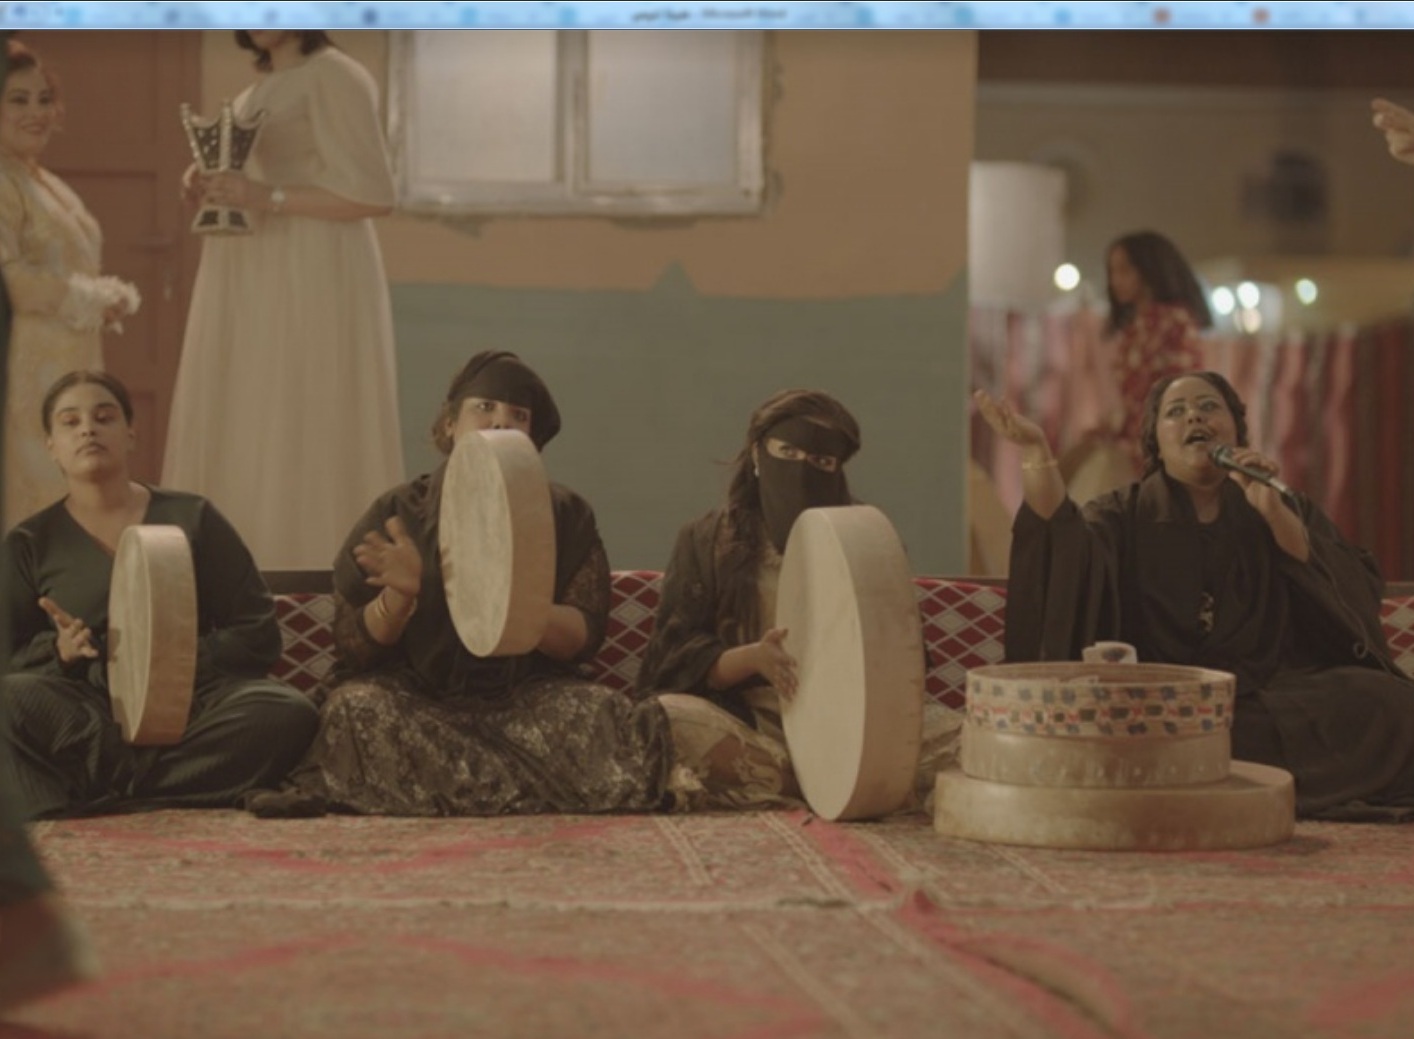  لقطة من الفيلم الروائي "حد الطار" للمخرج السعودي عبدالعزيز الشلاحي